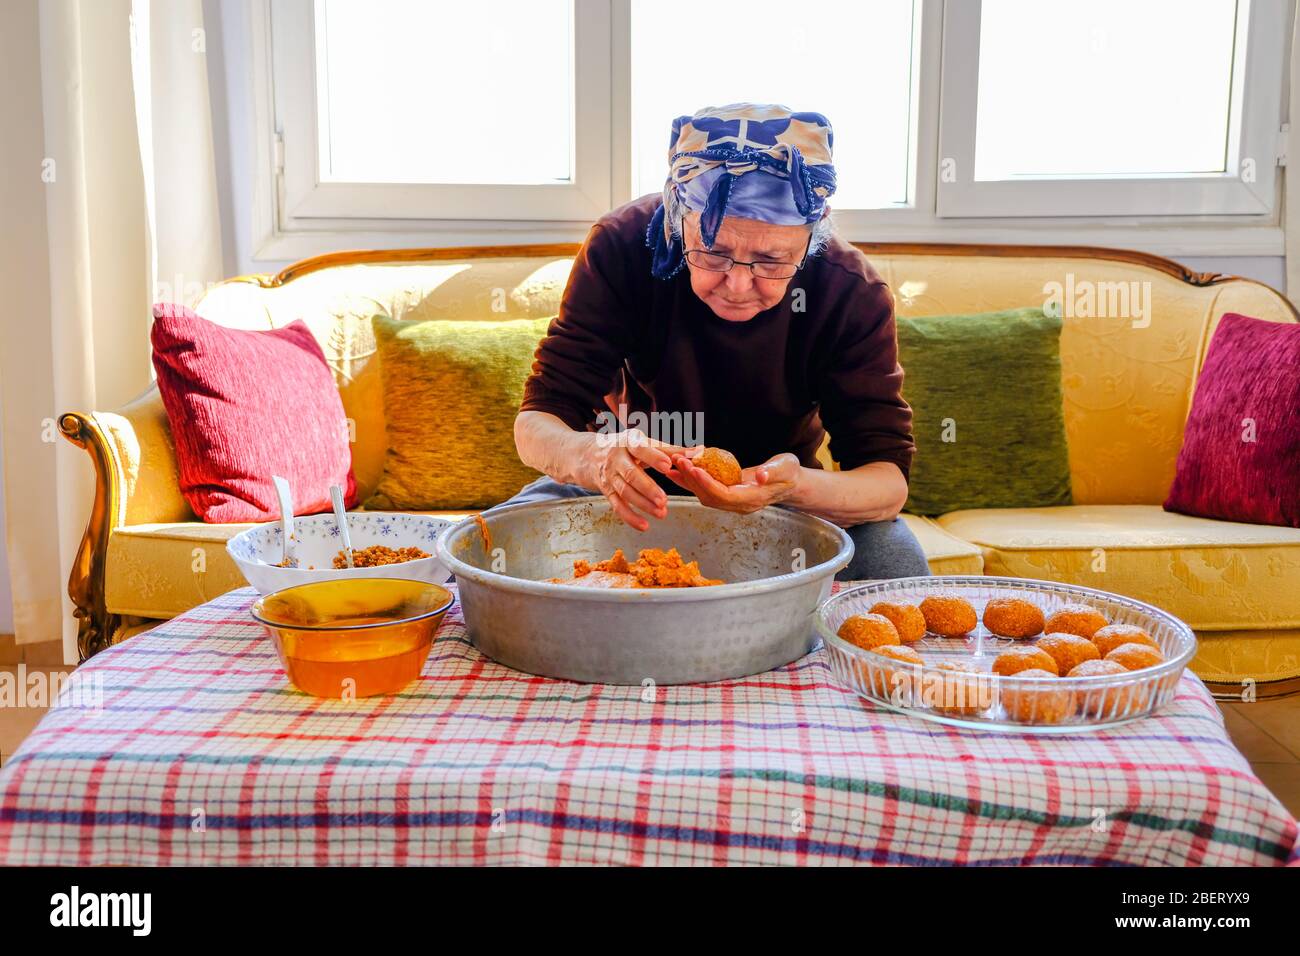 Traditionelle türkische Küche; gefüllte Fleischbällchen, türkisch bekannt als "icli kofte". Frau macht gefüllte Fleischbällchen zu Hause. Stockfoto